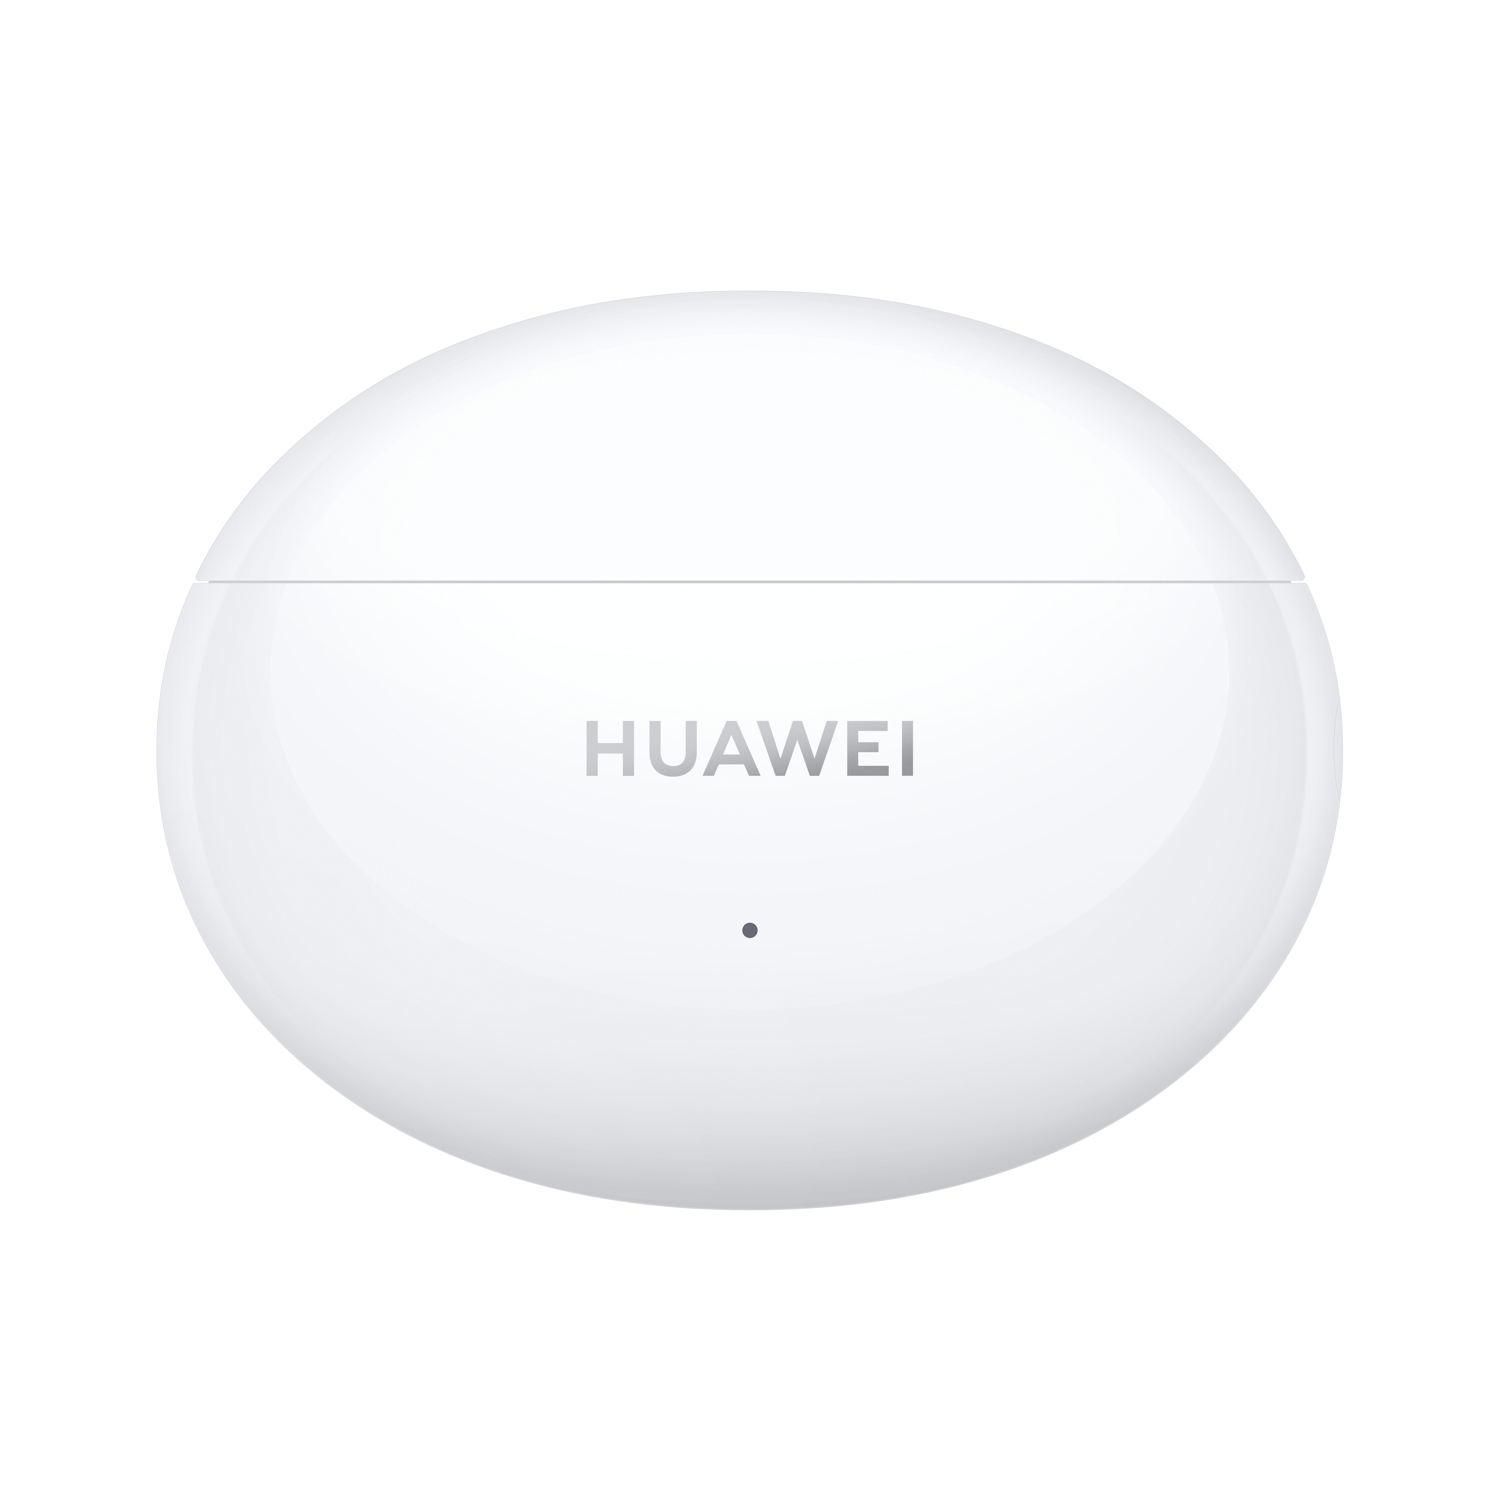 Bộ Sản Phẩm Huawei (Vòng Đeo Tay Thông Minh HUAWEI Band 6 + Tai Nghe Không Dây HUAWEI Freebuds 4i) | Hàng Chính Hãng